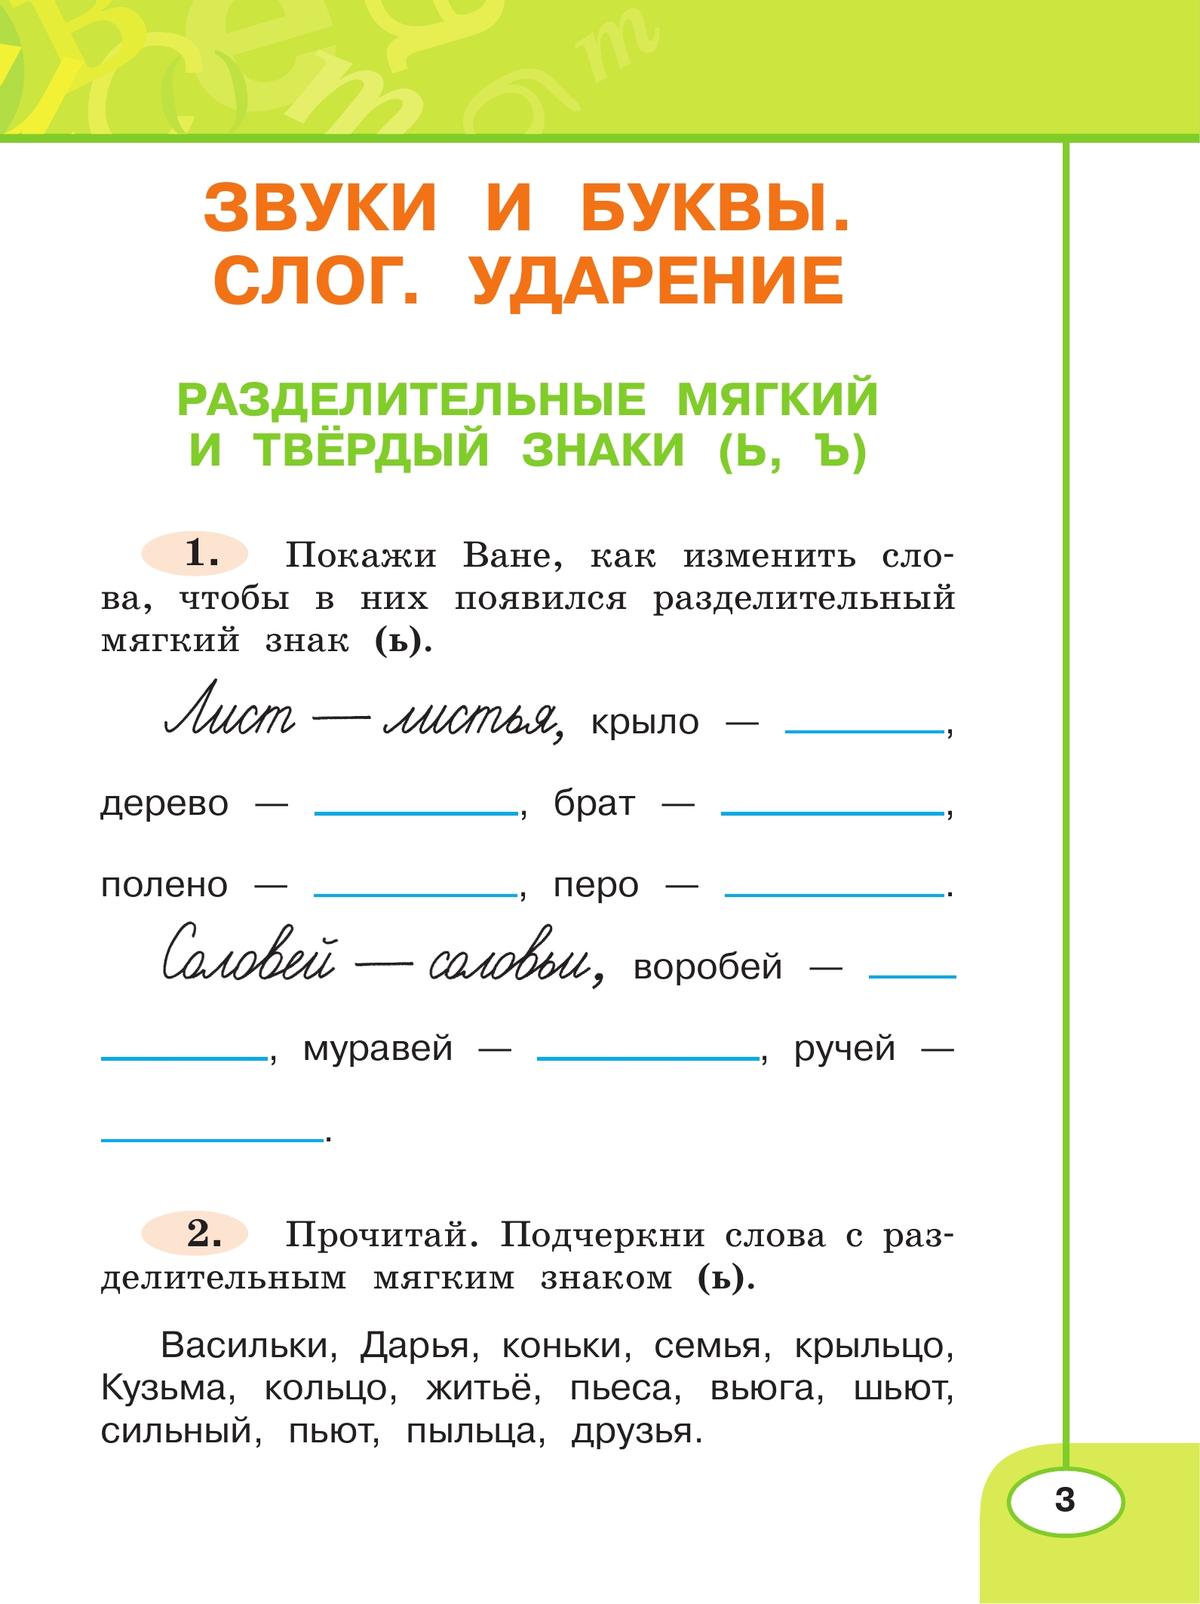 Русский язык. Рабочая тетрадь. 2 класс. В 2-х ч. Ч. 2 7